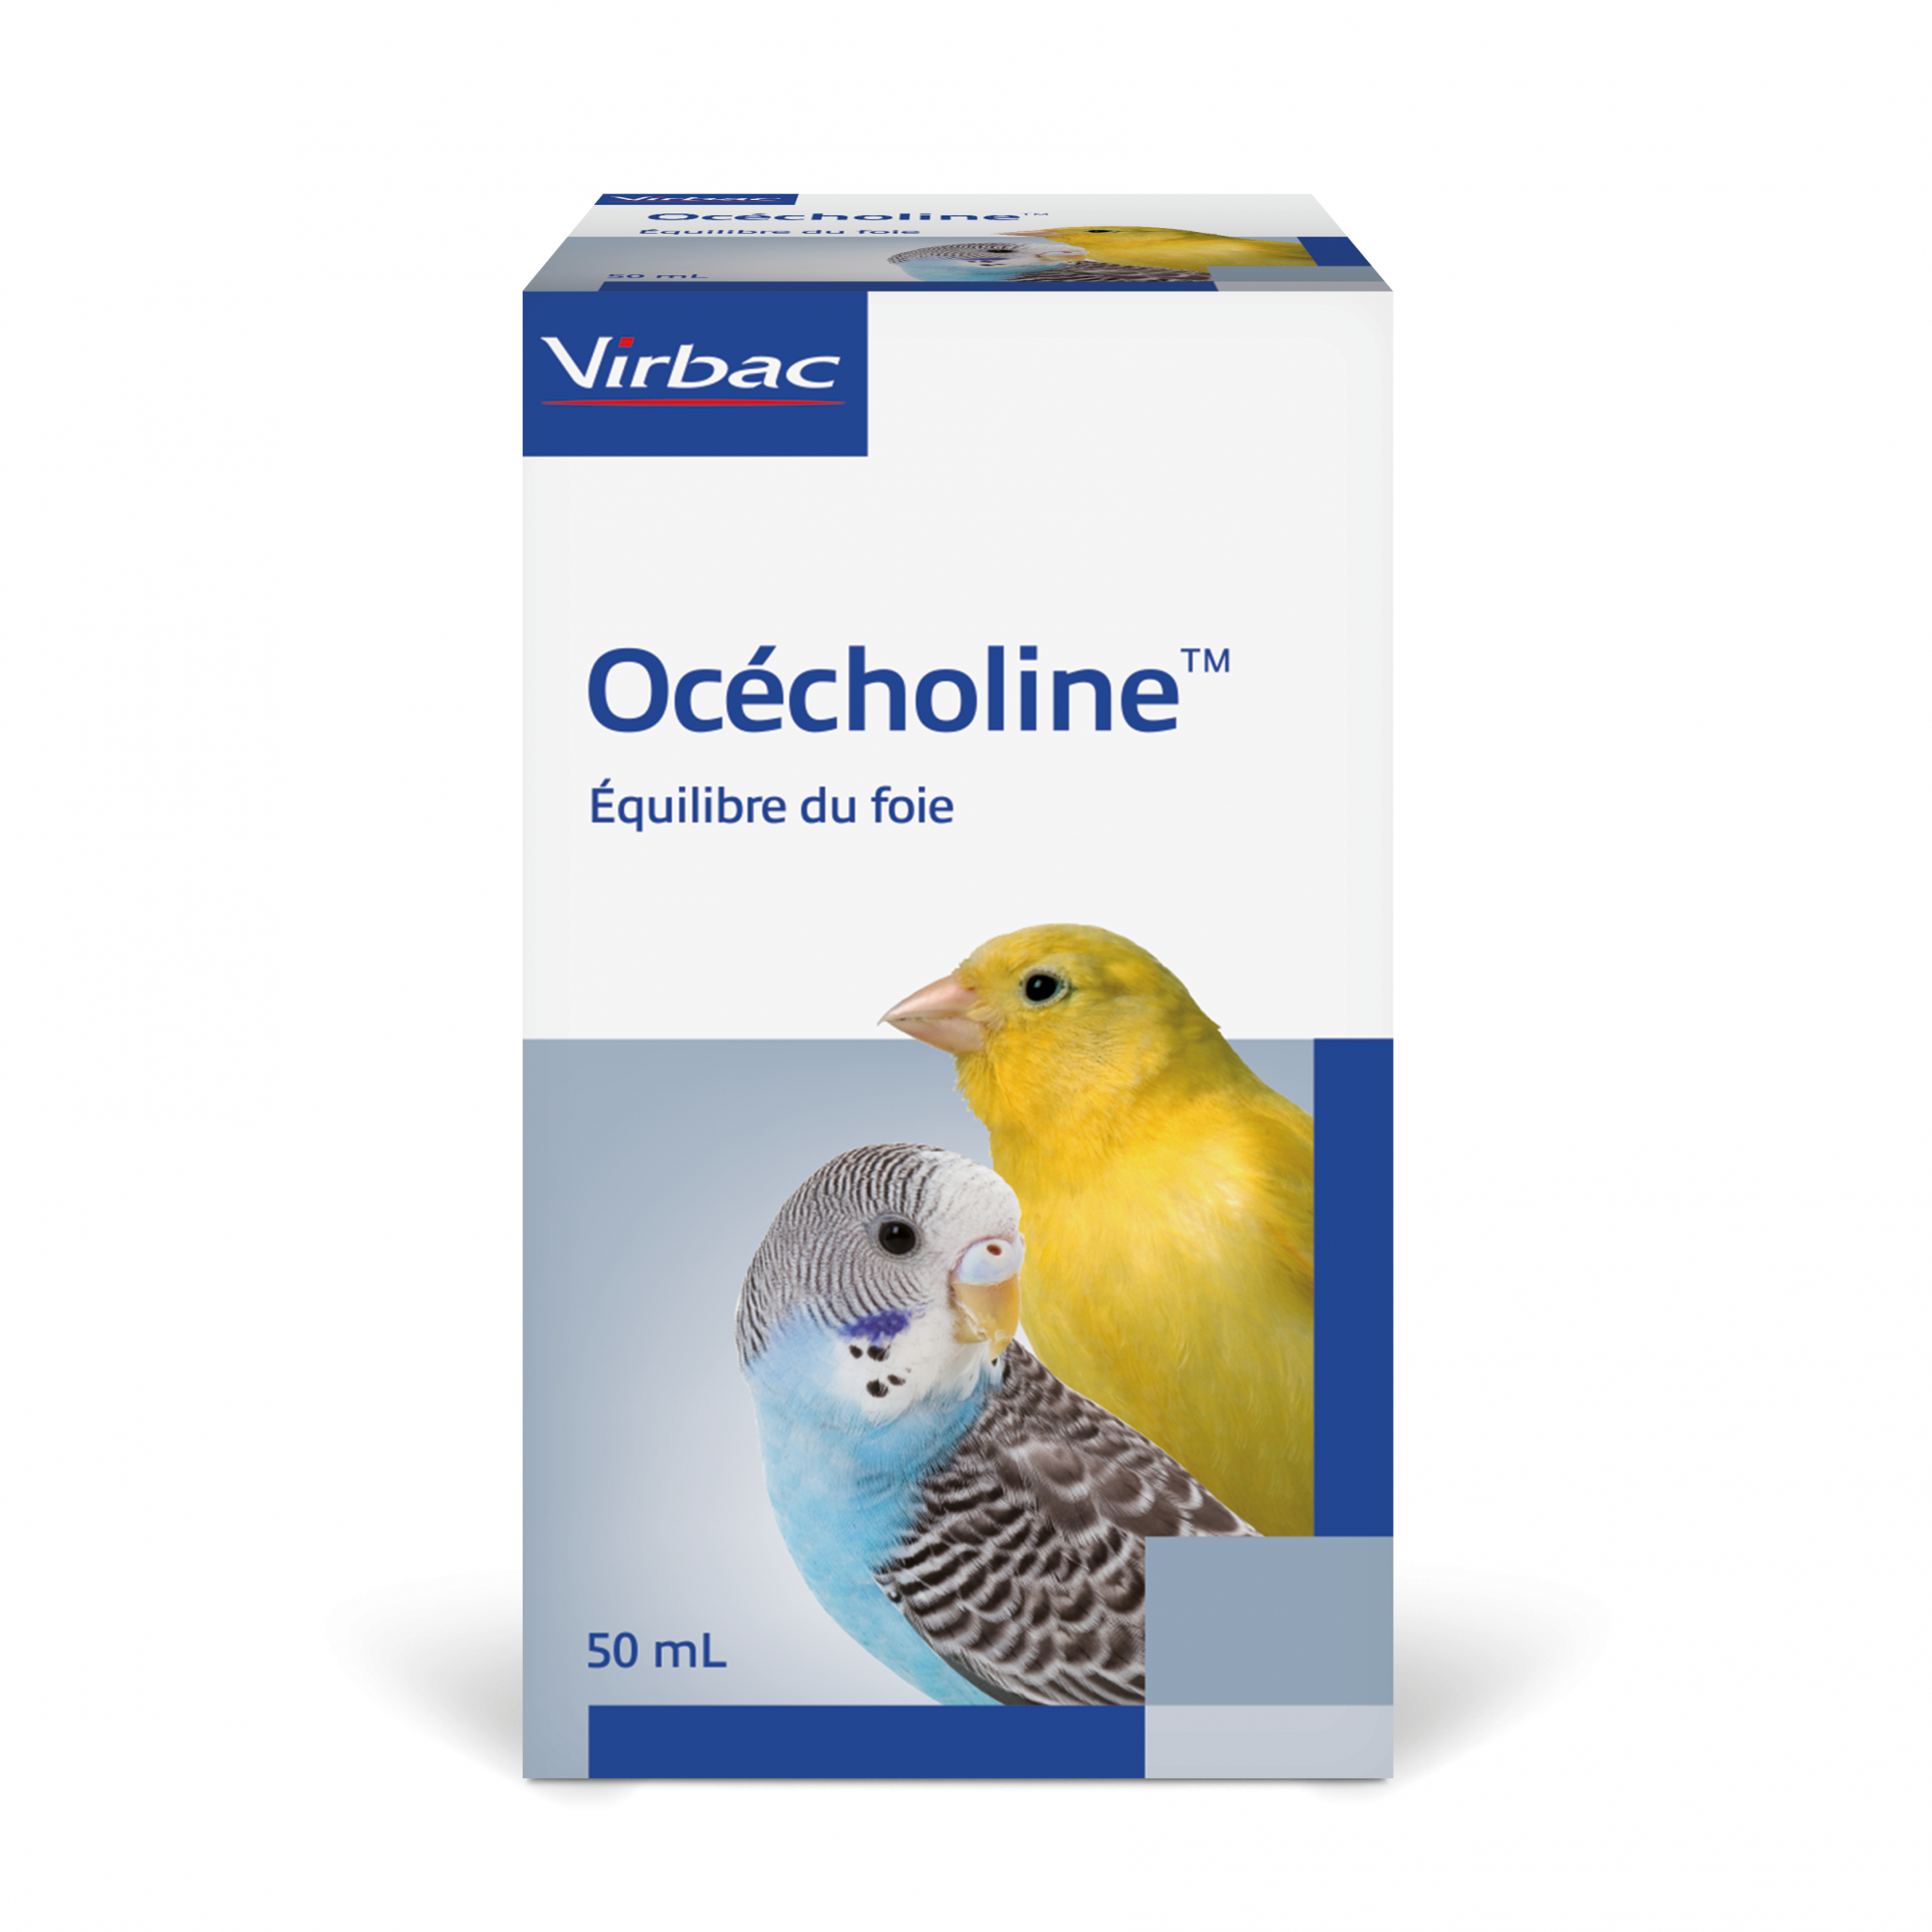 Virbac Ocecholine Limita le infiltrazioni di grasso al livello del fegato